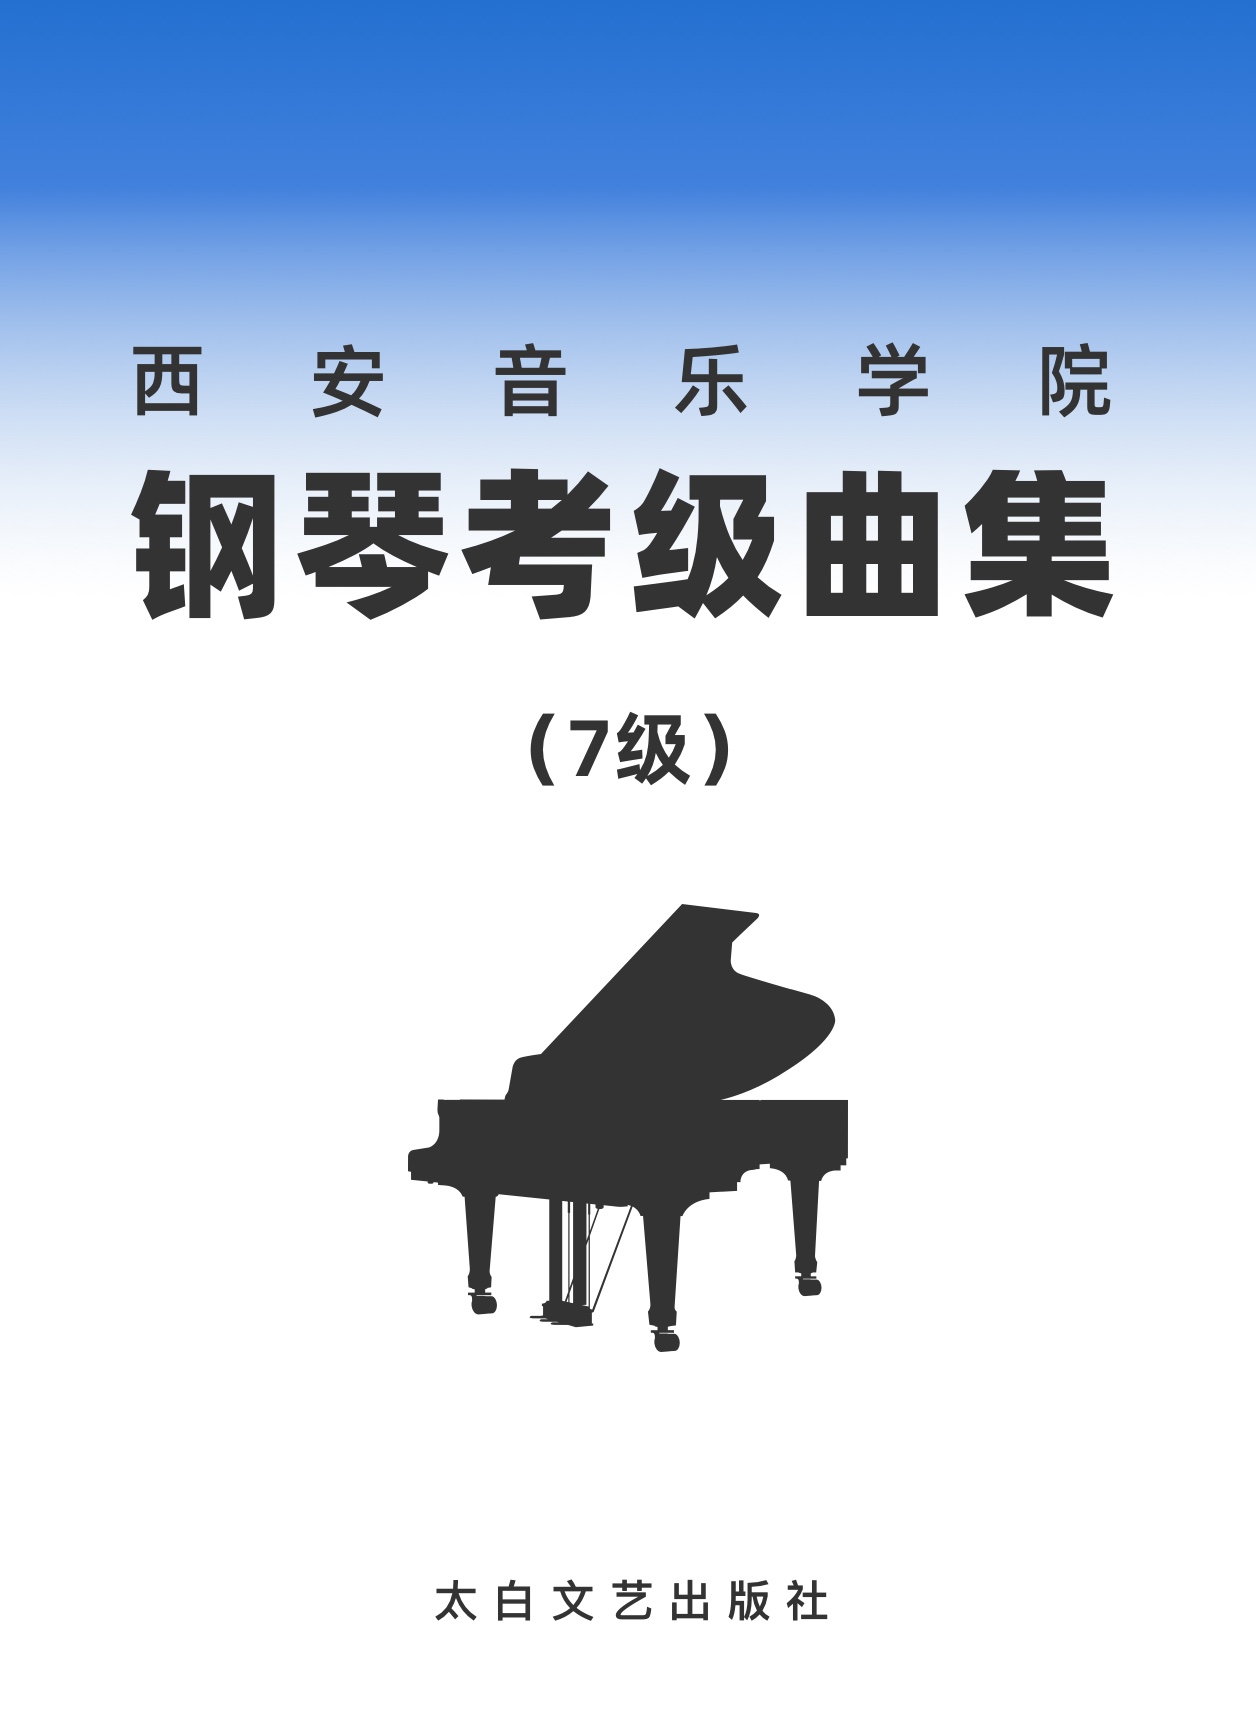 17第七级 主题与变奏钢琴简谱 数字双手